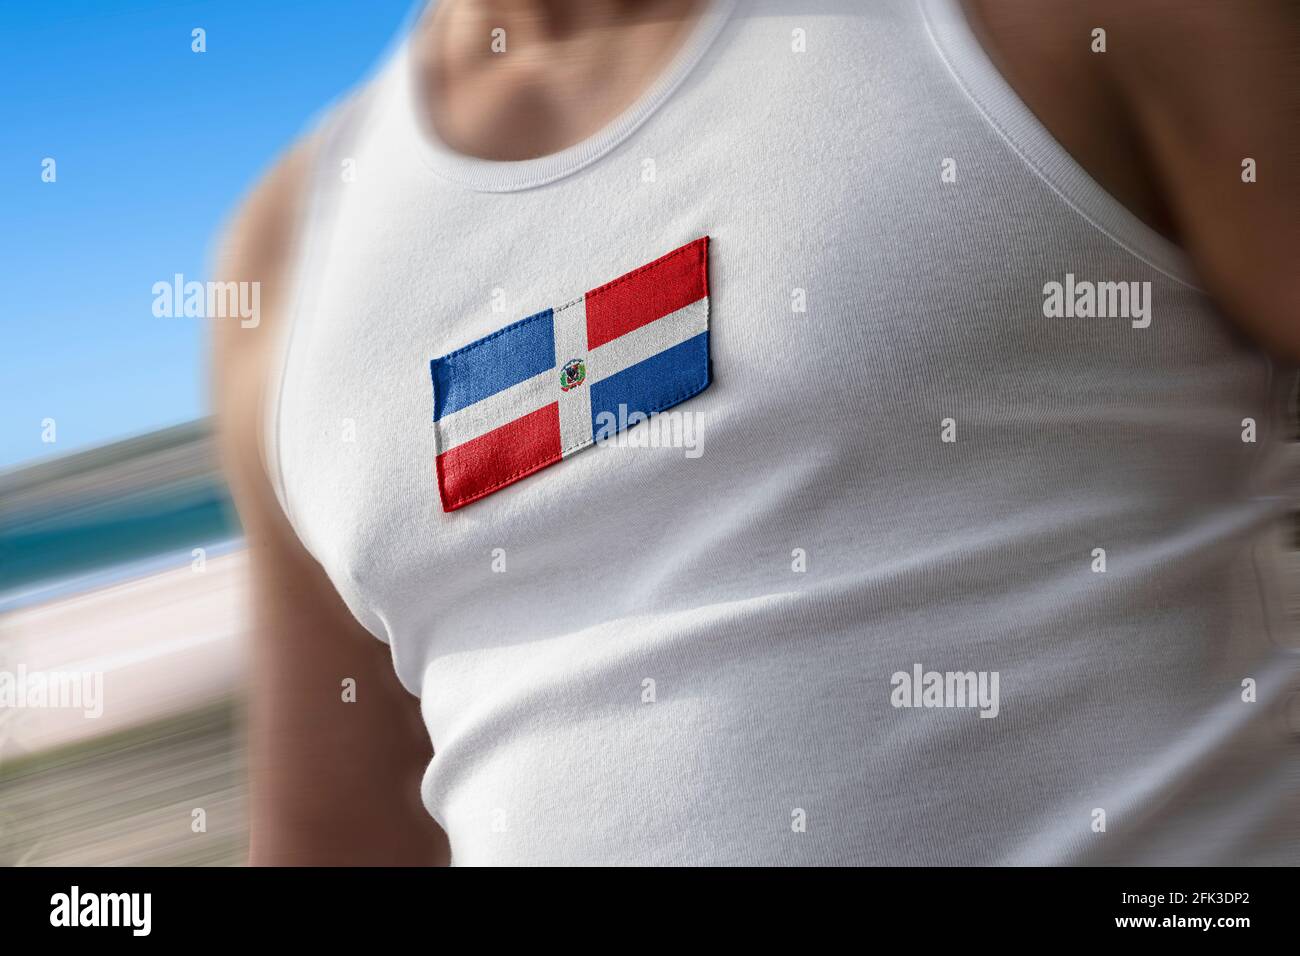 Le drapeau national de Dominicana sur la poitrine de l'athlète Banque D'Images